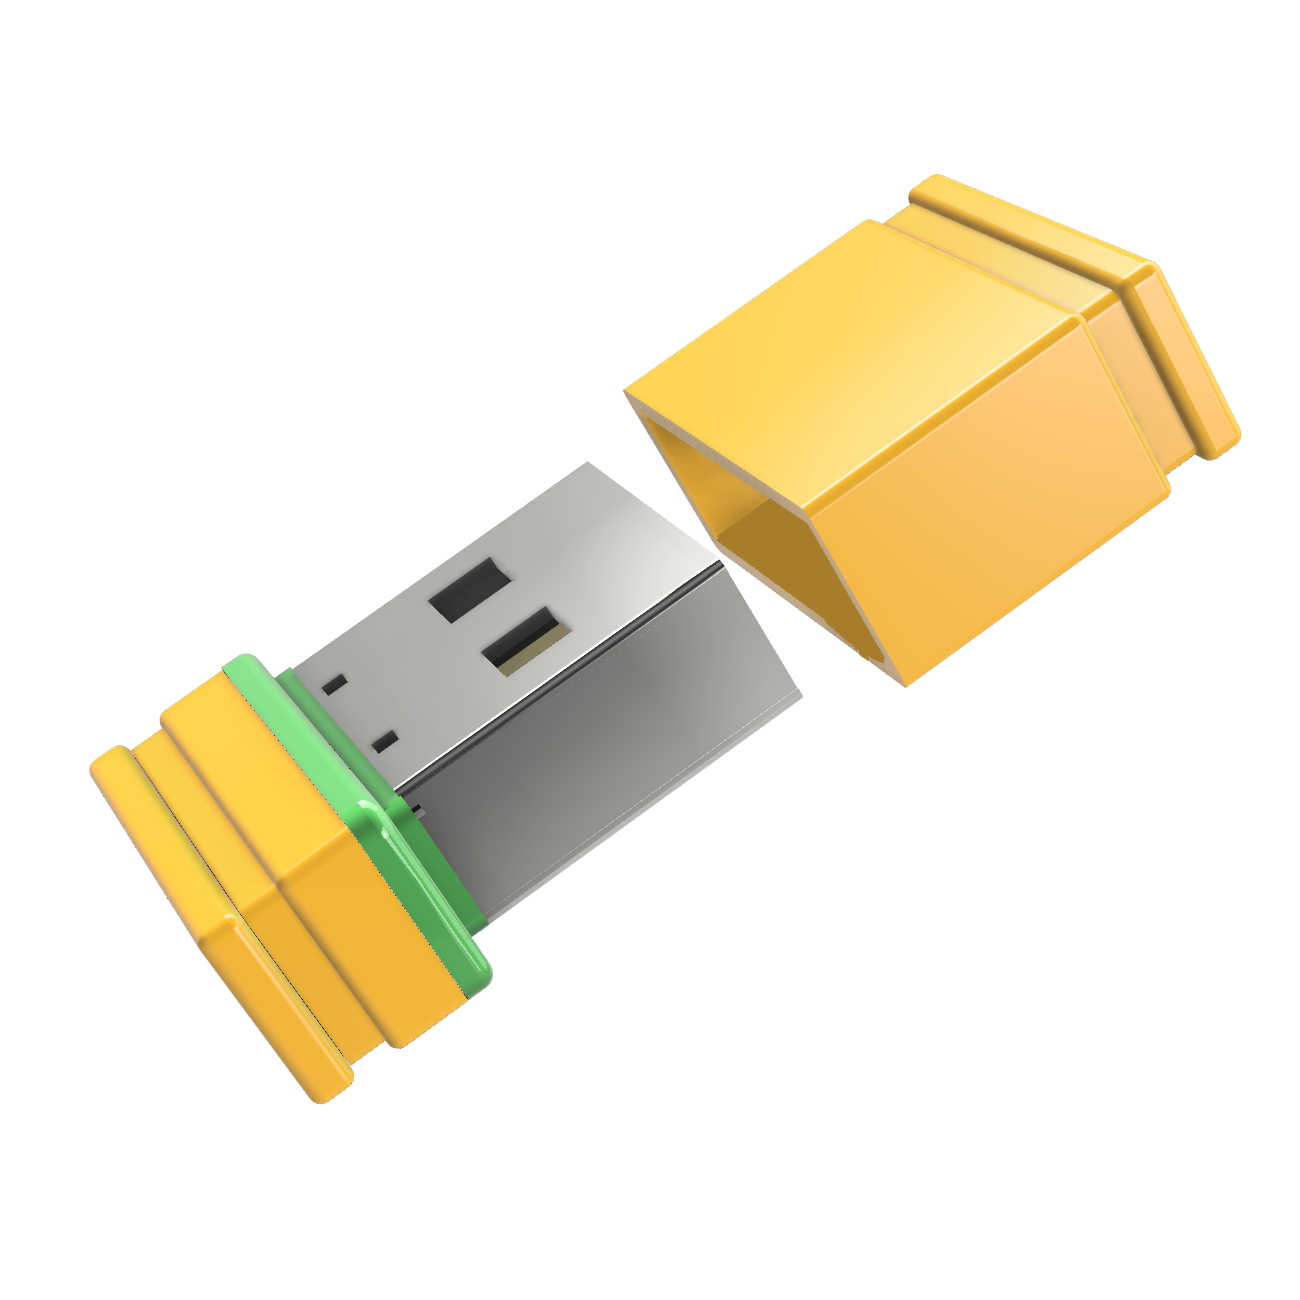 GB) Mini (Gelb/Grün, USB-Stick GERMANY USB 8 P1 ®ULTRA